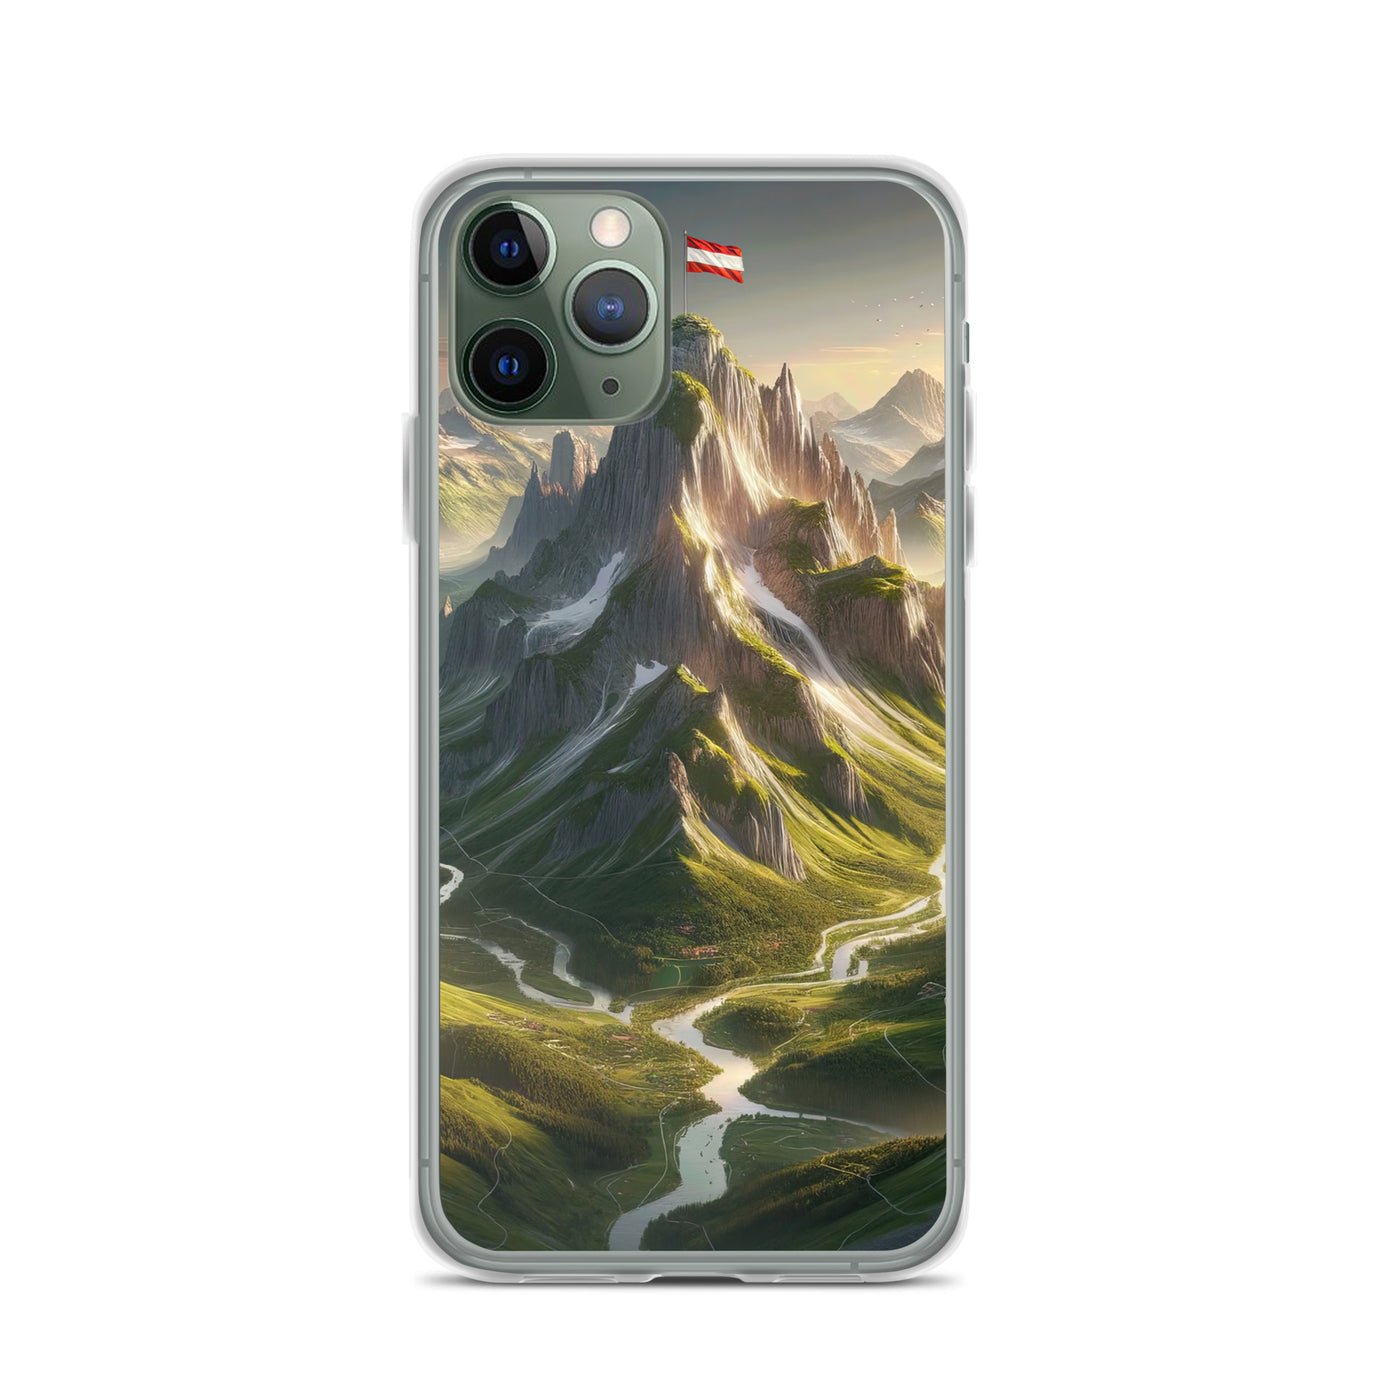 Fotorealistisches Bild der Alpen mit österreichischer Flagge, scharfen Gipfeln und grünen Tälern - iPhone Schutzhülle (durchsichtig) berge xxx yyy zzz iPhone 11 Pro